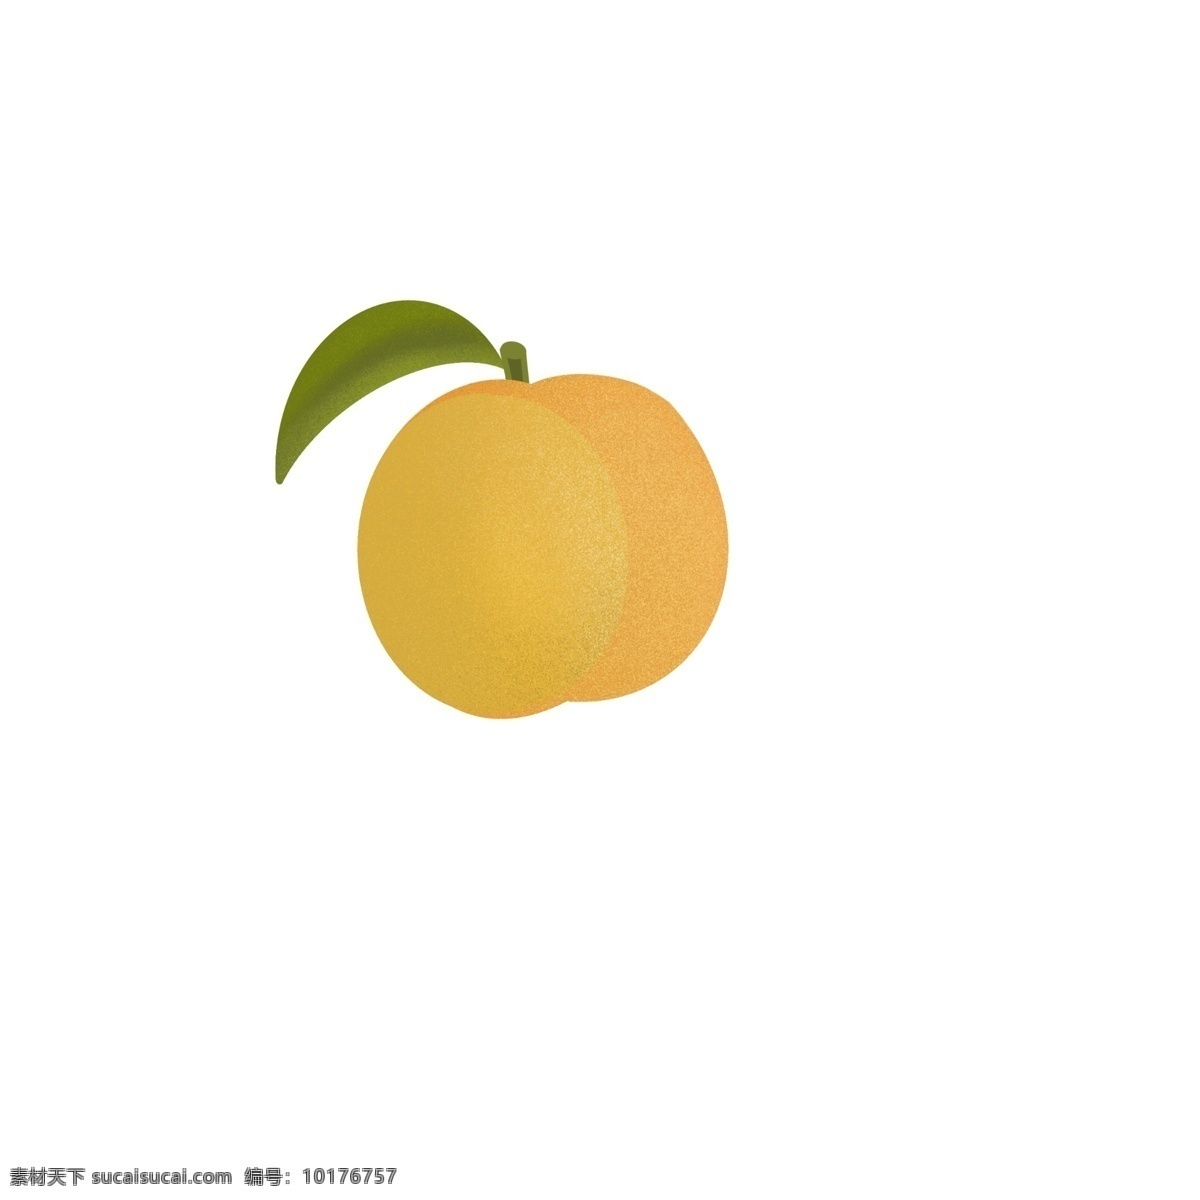 黄桃 水果 桃子 免抠素材 水果图形 水果素材 标志图标 其他图标